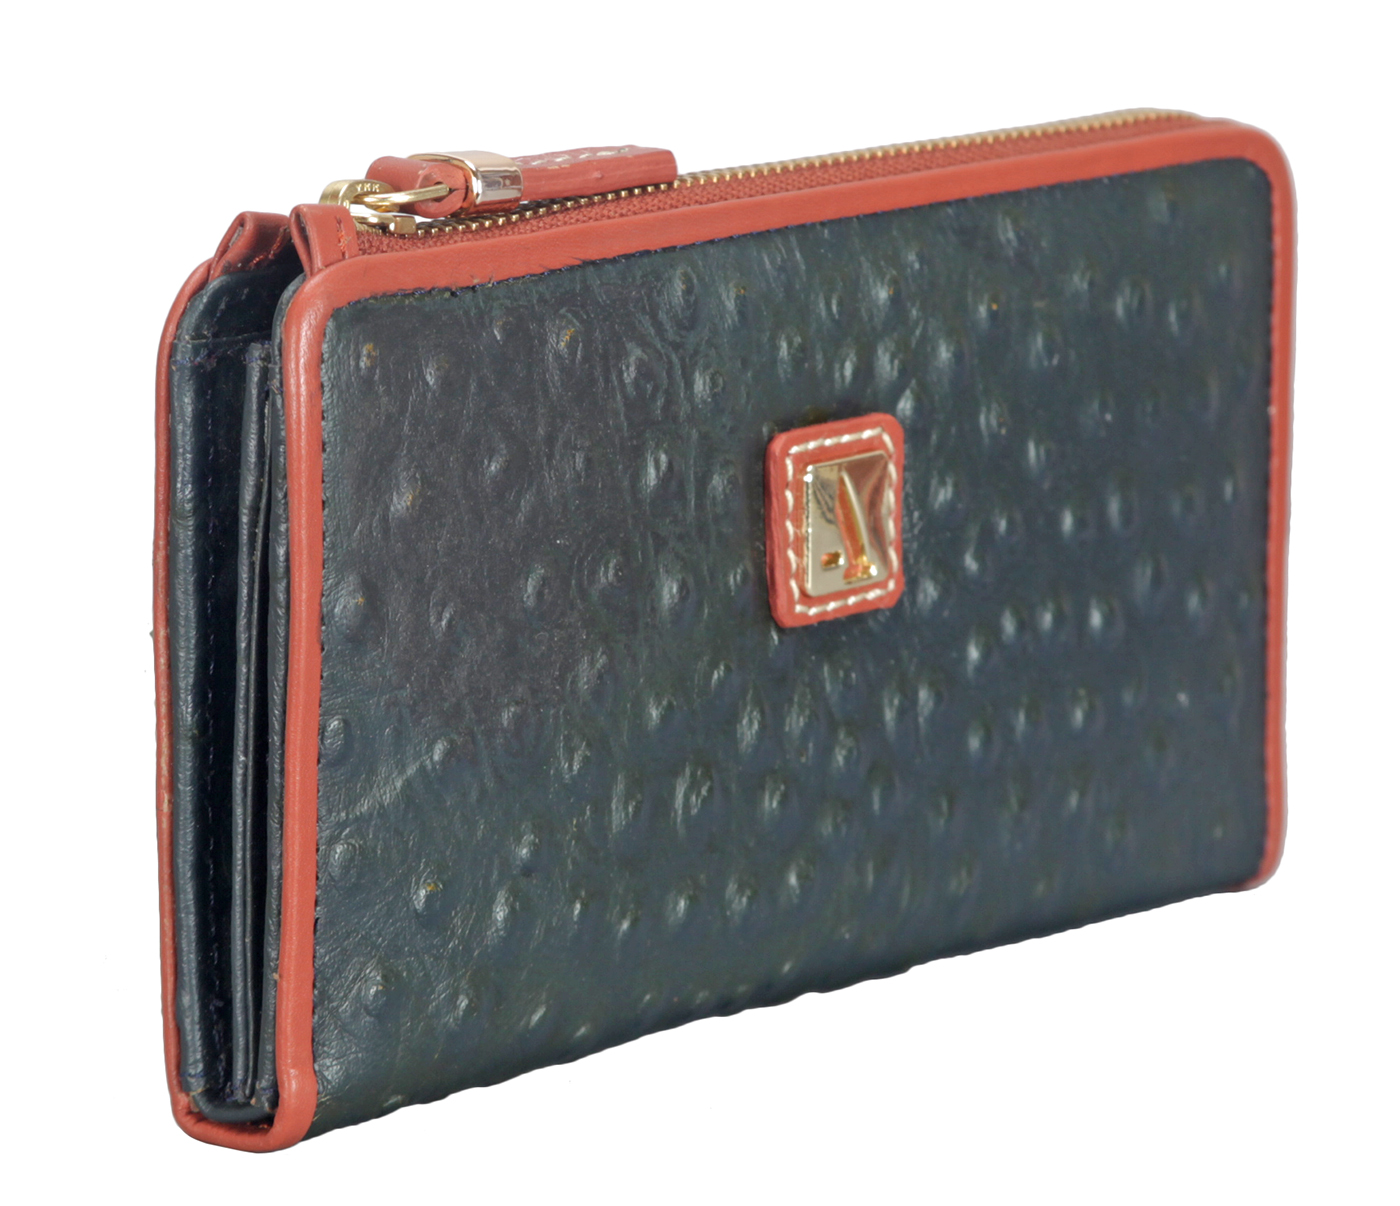 W319-Jutte-Women's Wallet And Clutch In Genuine Leather - Black